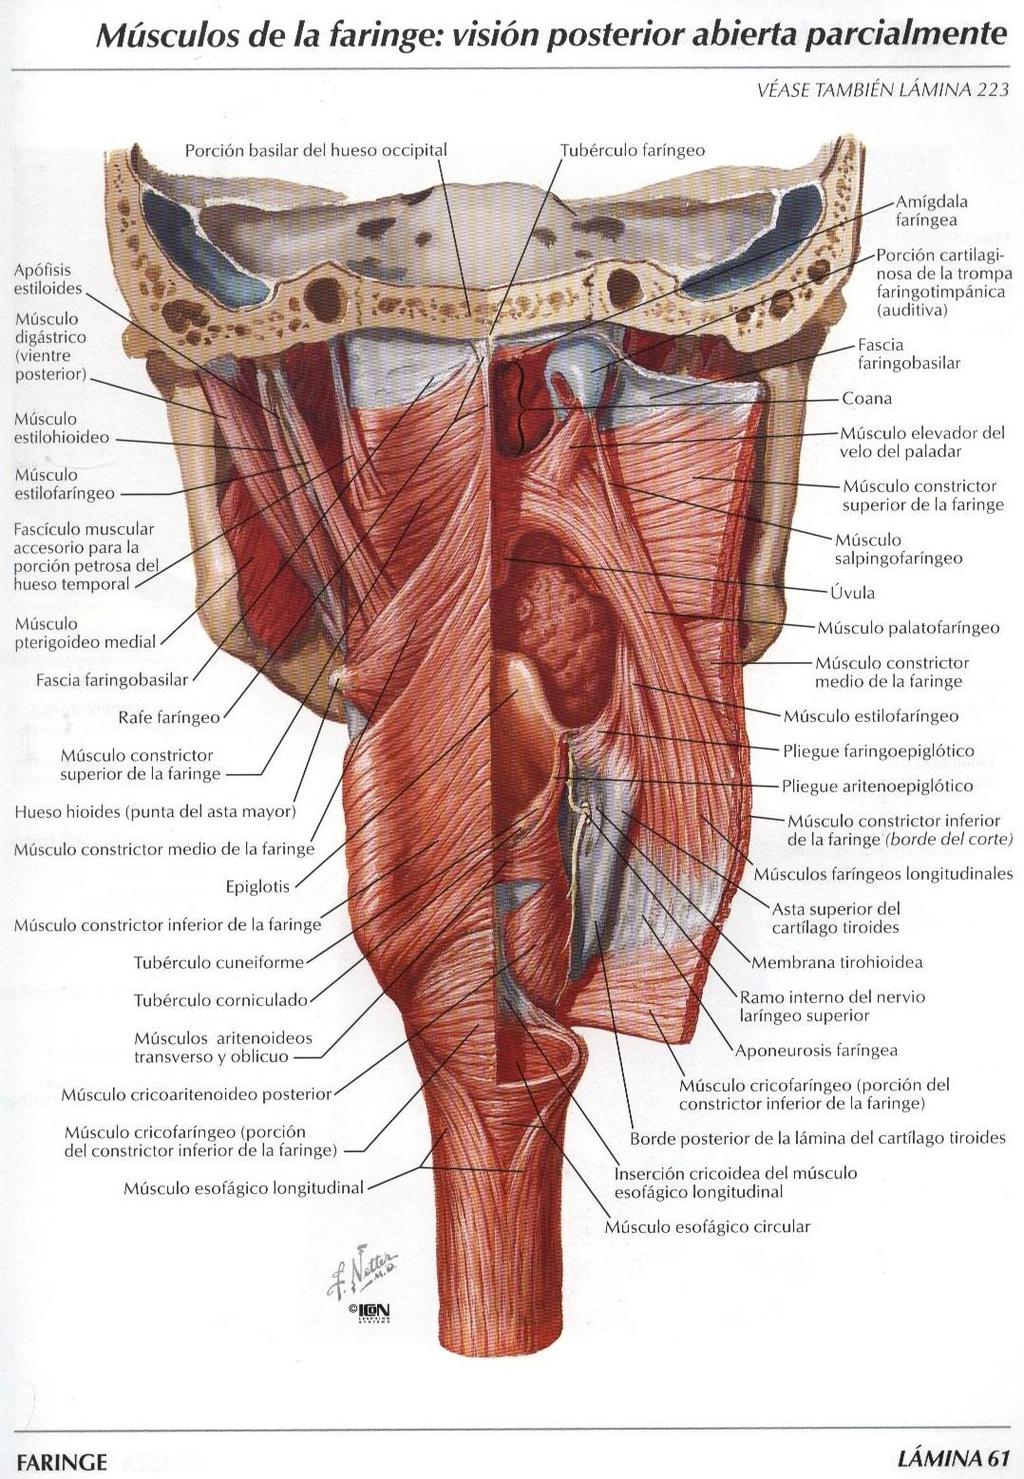 Muscoli della faringe. I muscoli della faringe si distinguono in: - muscoli costrittori: sovrapposti in parte.